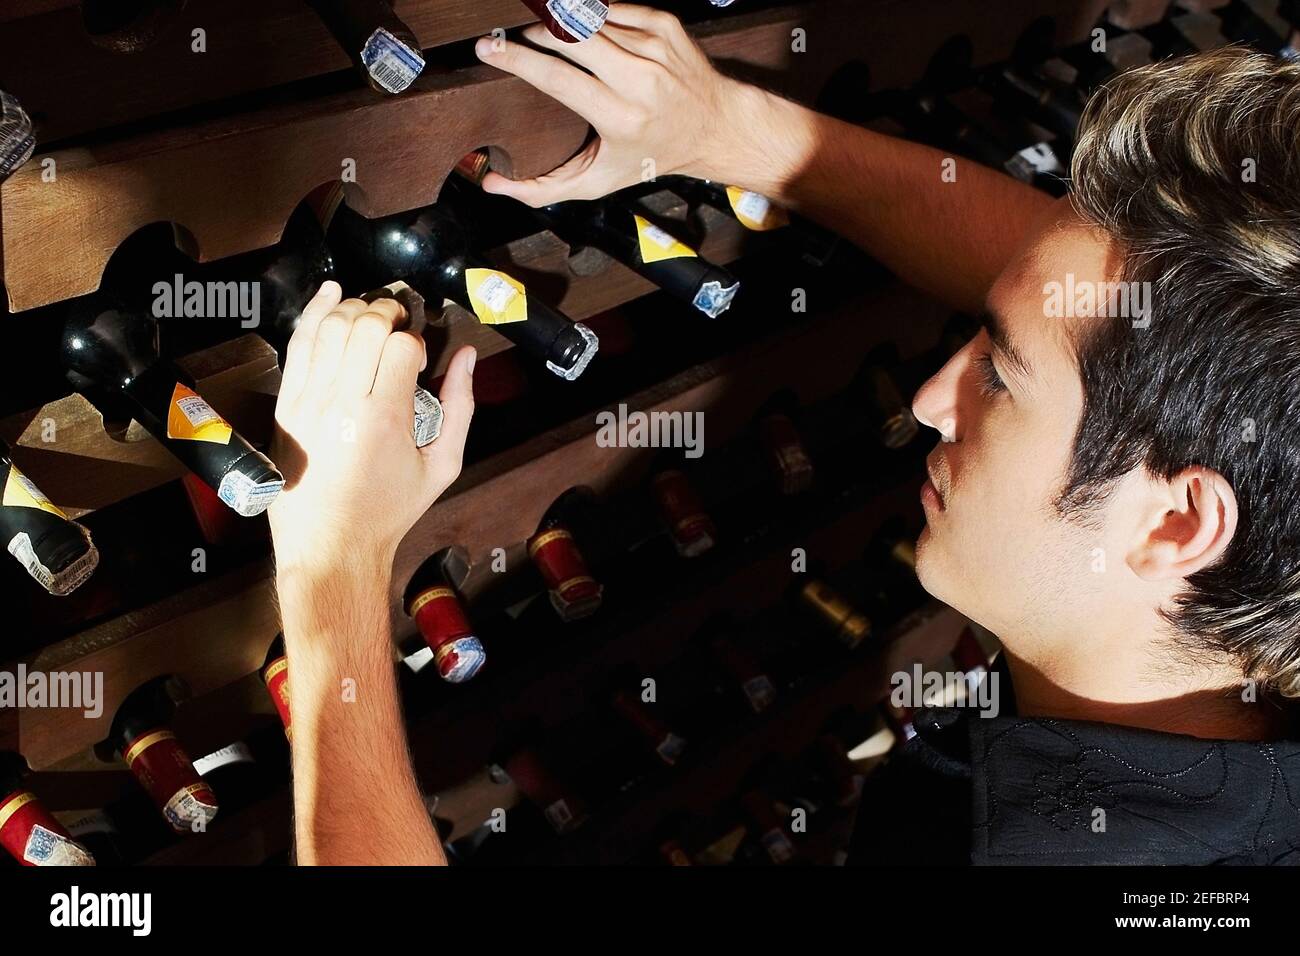 Profilo laterale di un giovane da cui prende una bottiglia una rastrelliera per vini Foto Stock